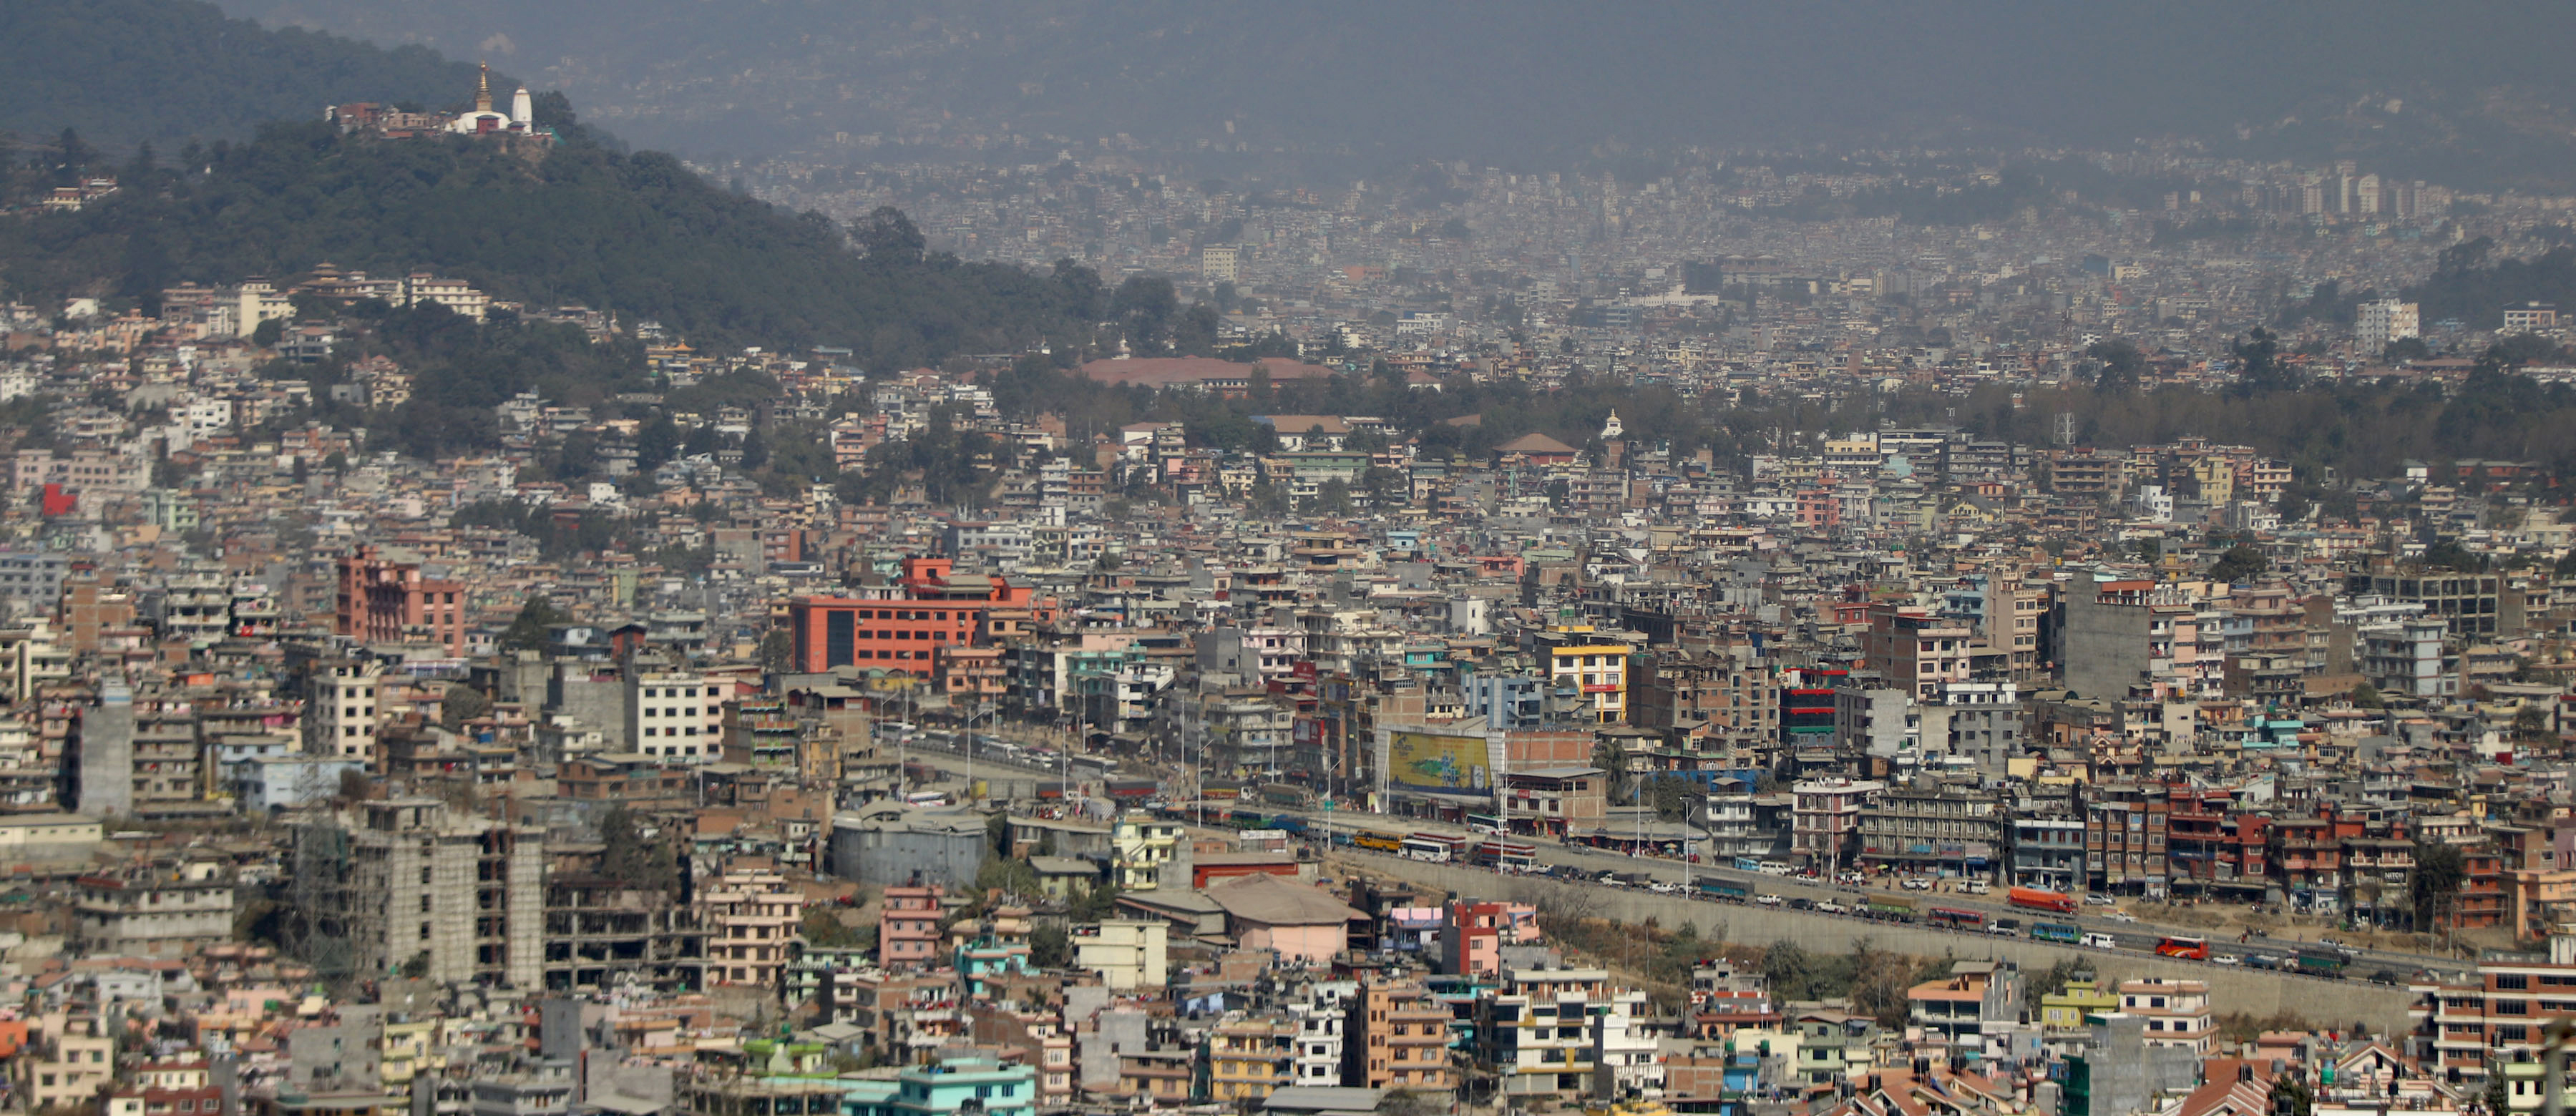 काठमाडौंमा आज सामान्य वर्षाको सम्भावना, भोलिबाट देशभर झरी